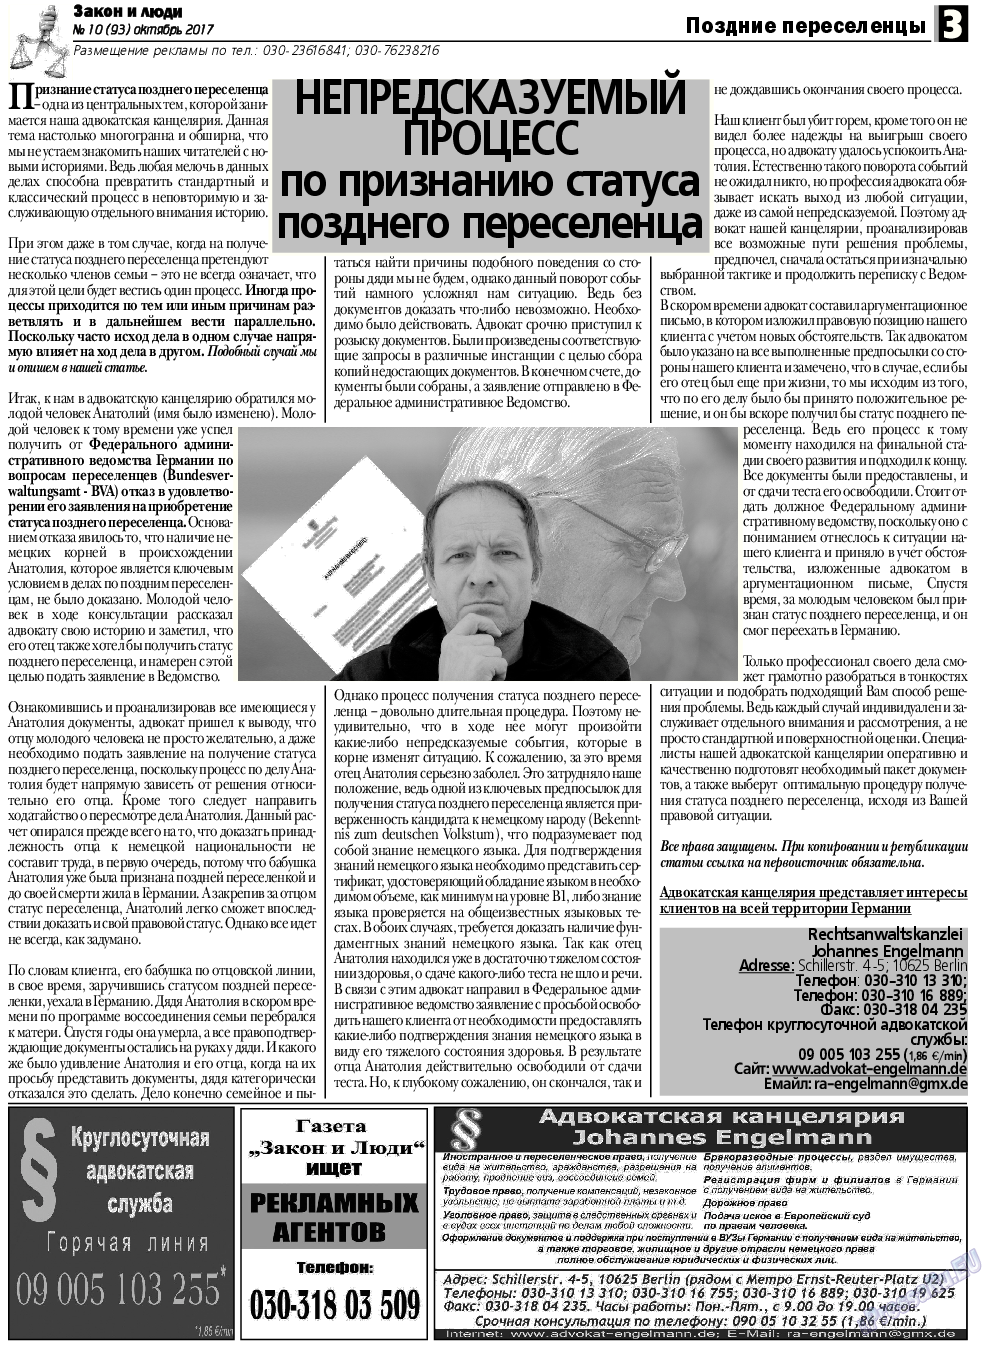 Закон и люди, газета. 2017 №10 стр.3